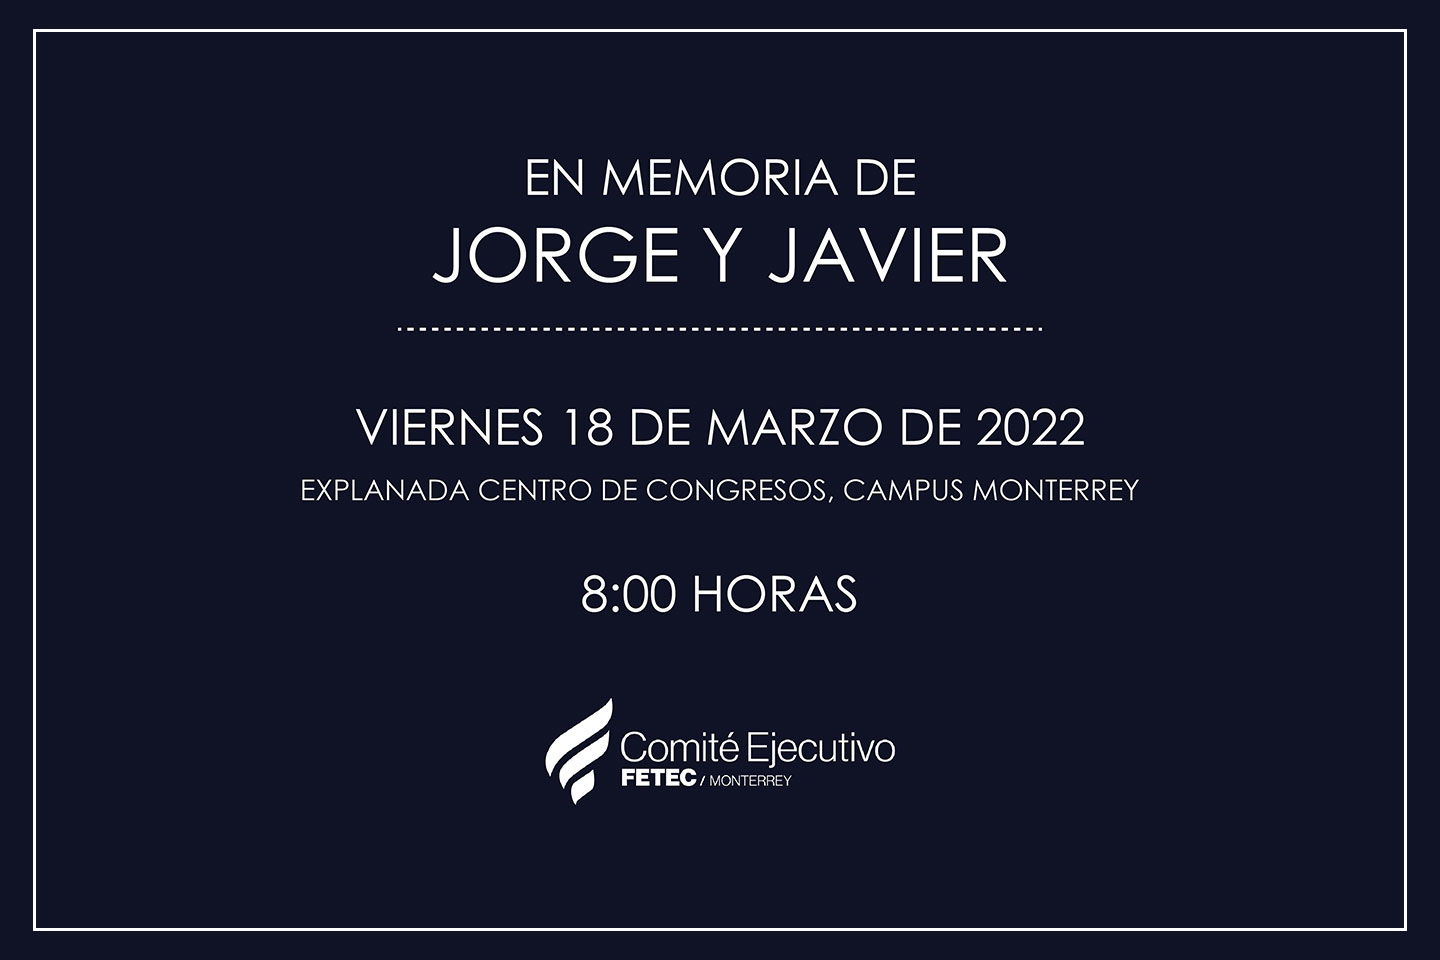 Invitación en Memoria de Jorge y Javier